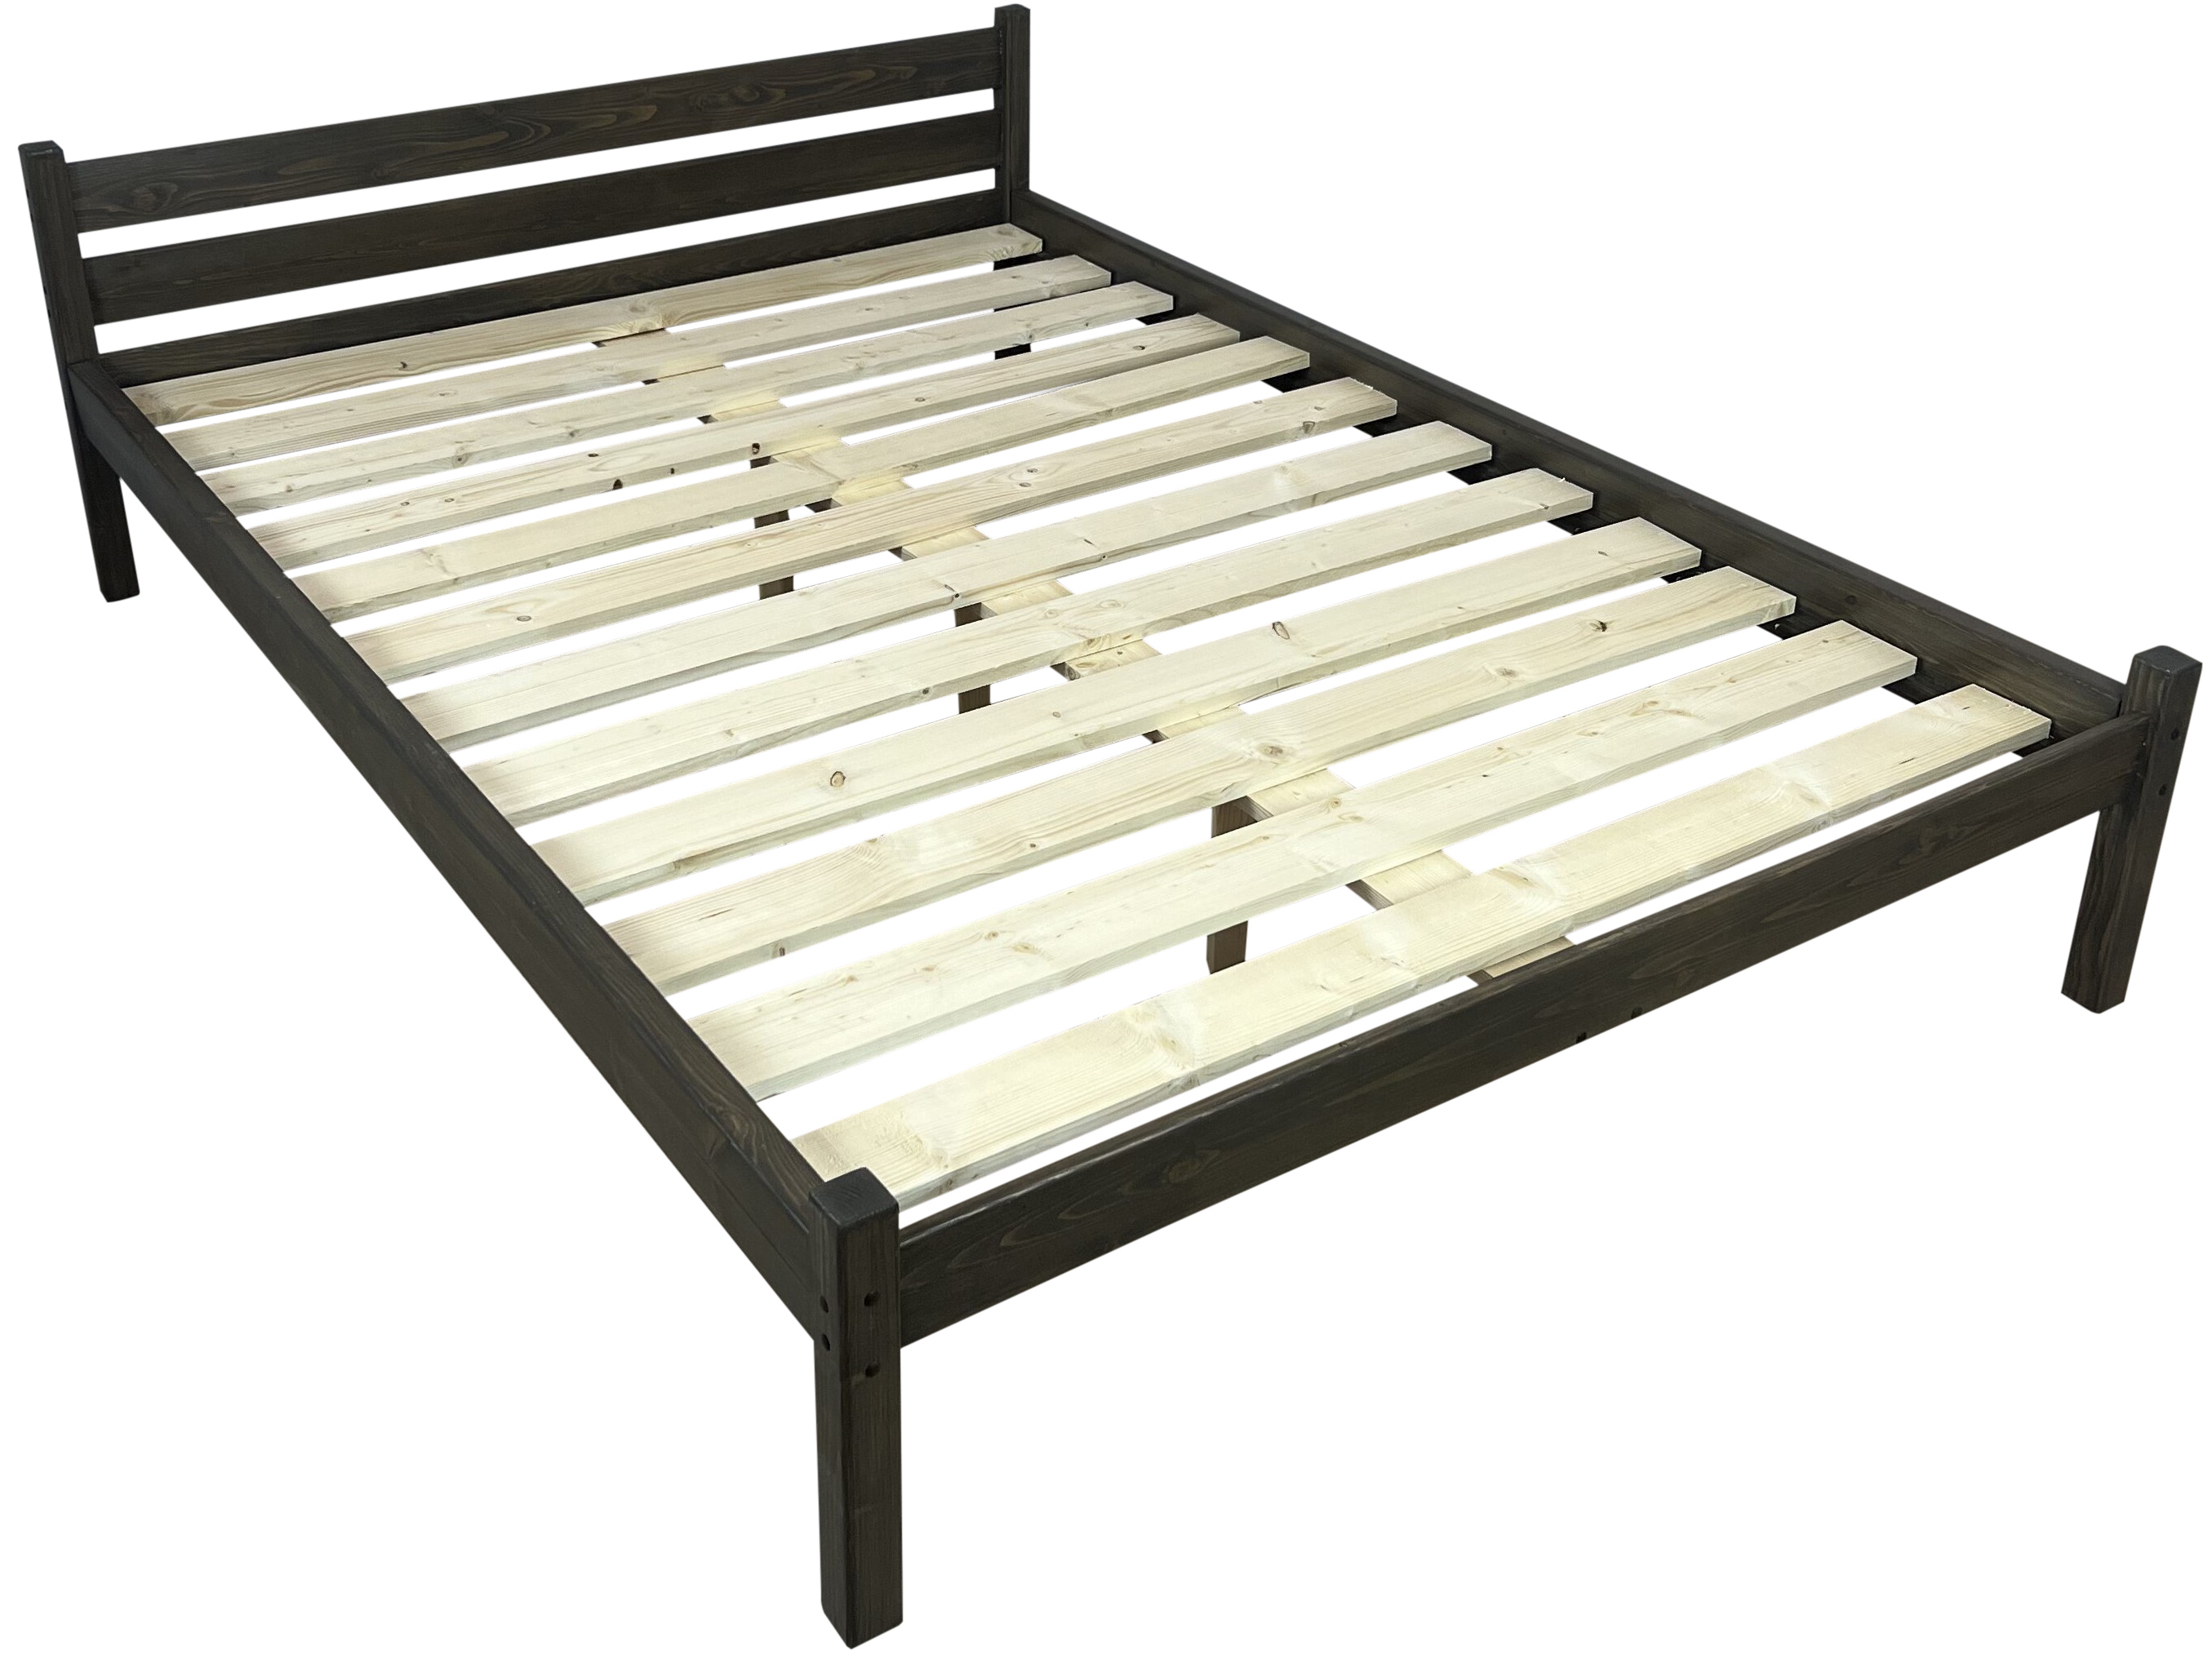 Двуспальная кровать фиеста венге лоредо 160х200 см